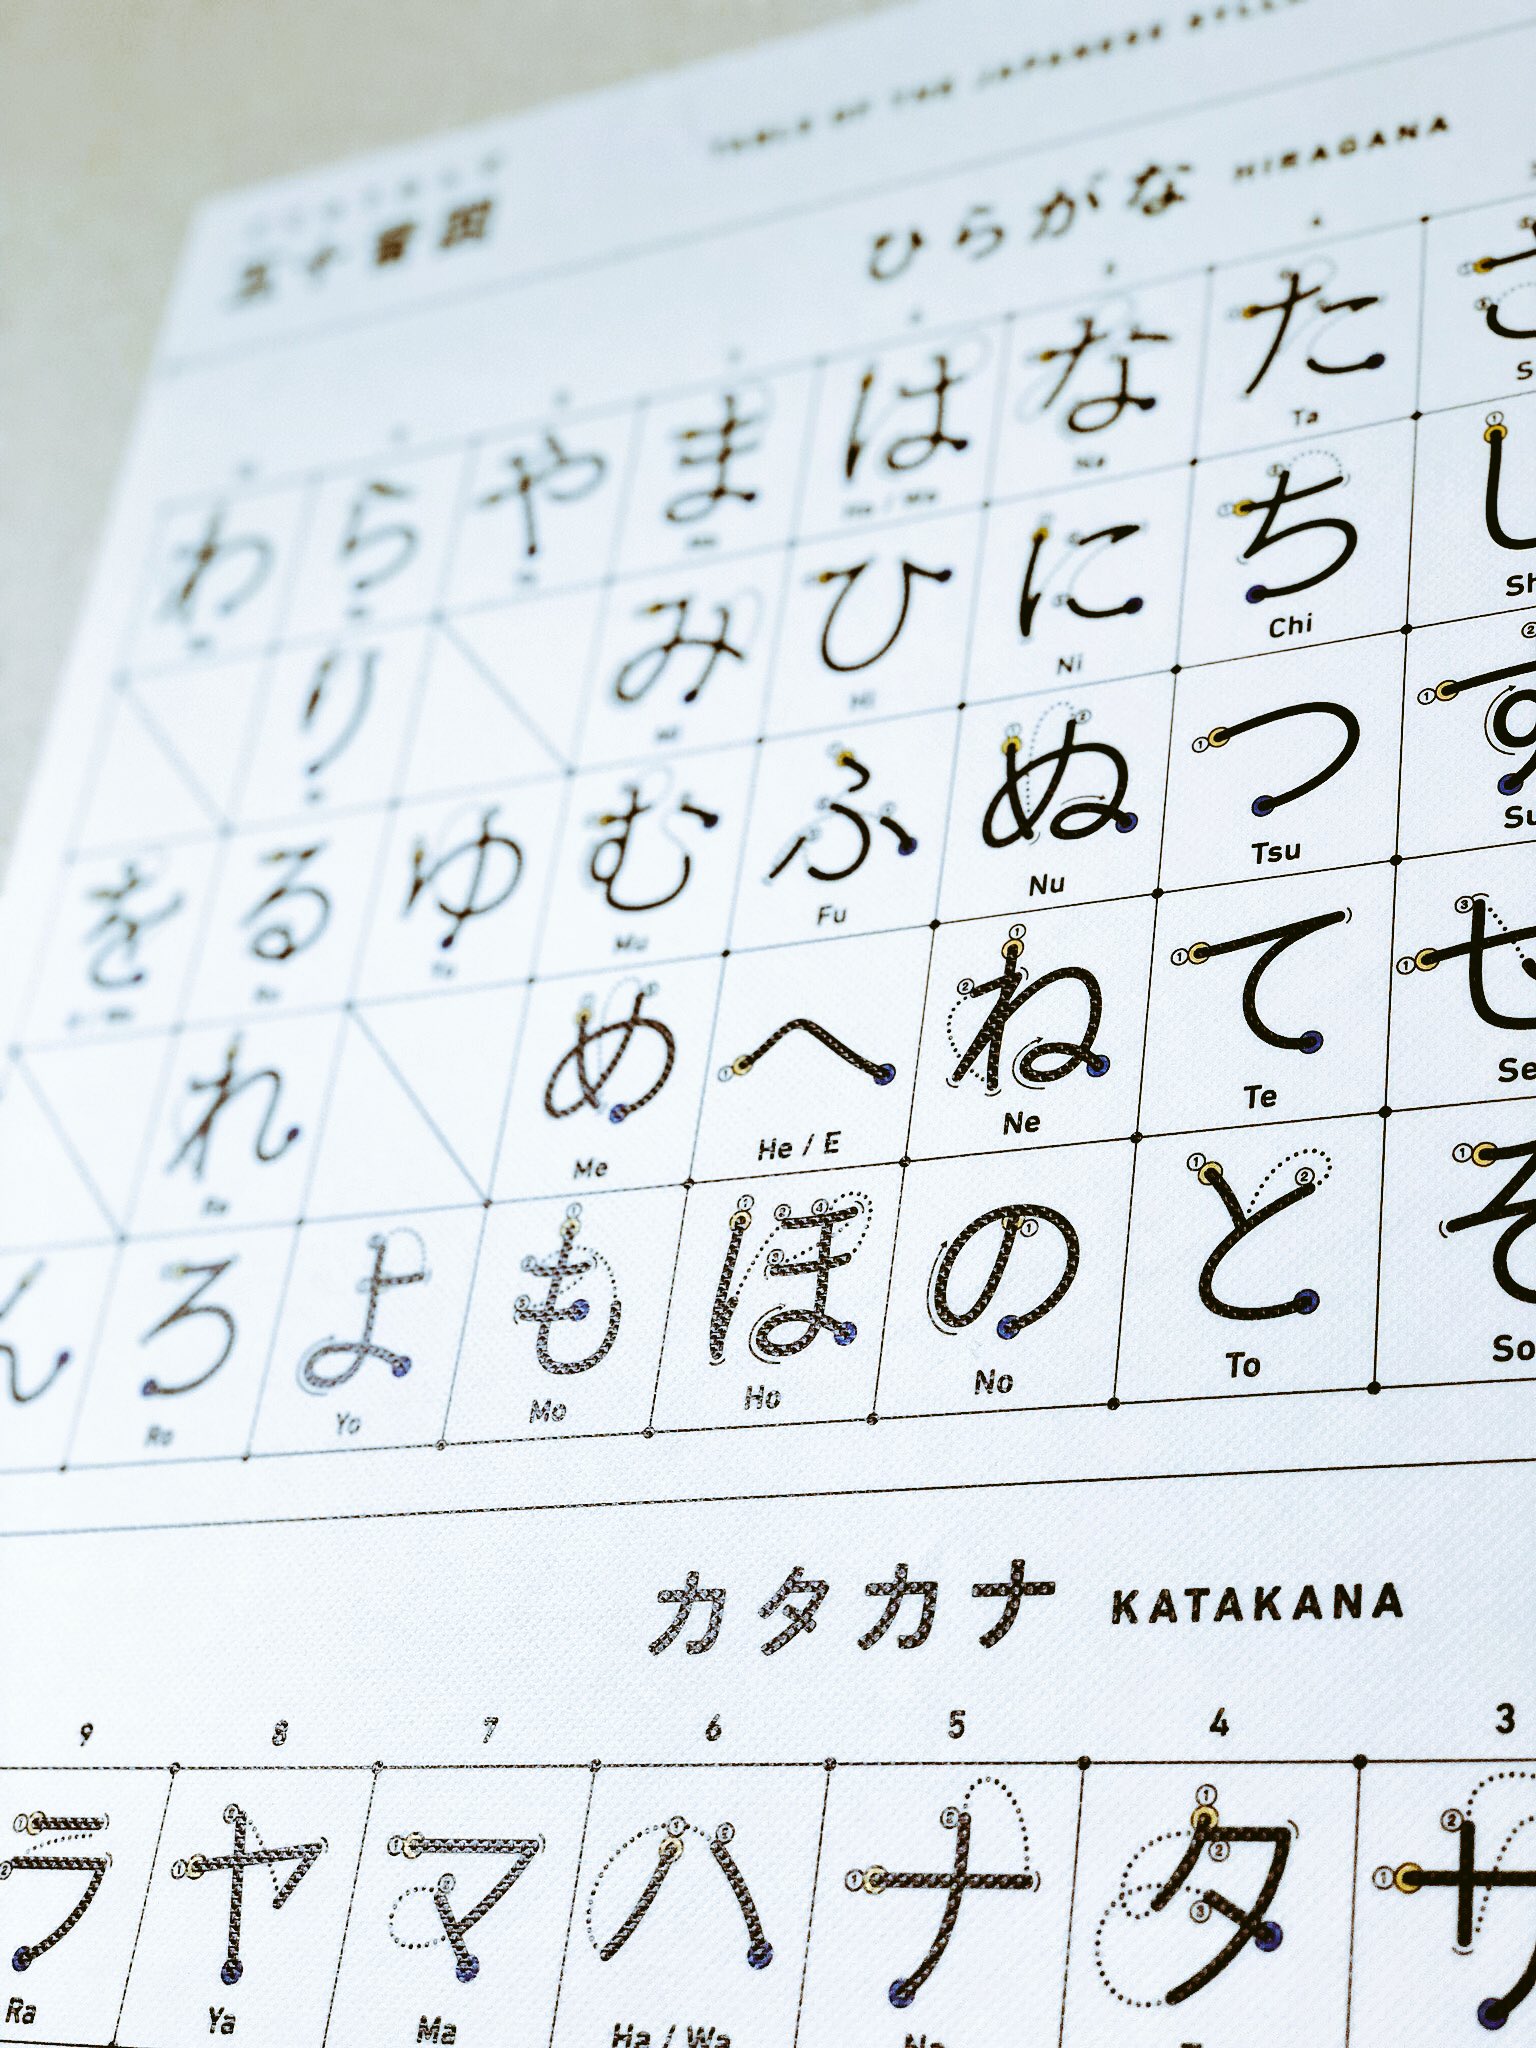 ぺったりー Pettary Pa Twitter Suzurijp さんで頼んだ吸着ターポリンのポスターが届きました シンプルでかっこいい仕上がりです 日本語の塾の壁にも良さそうです 日本語 ひらがな カタカタ 五十音図 Typography タイポグラフィ 文字 T Co